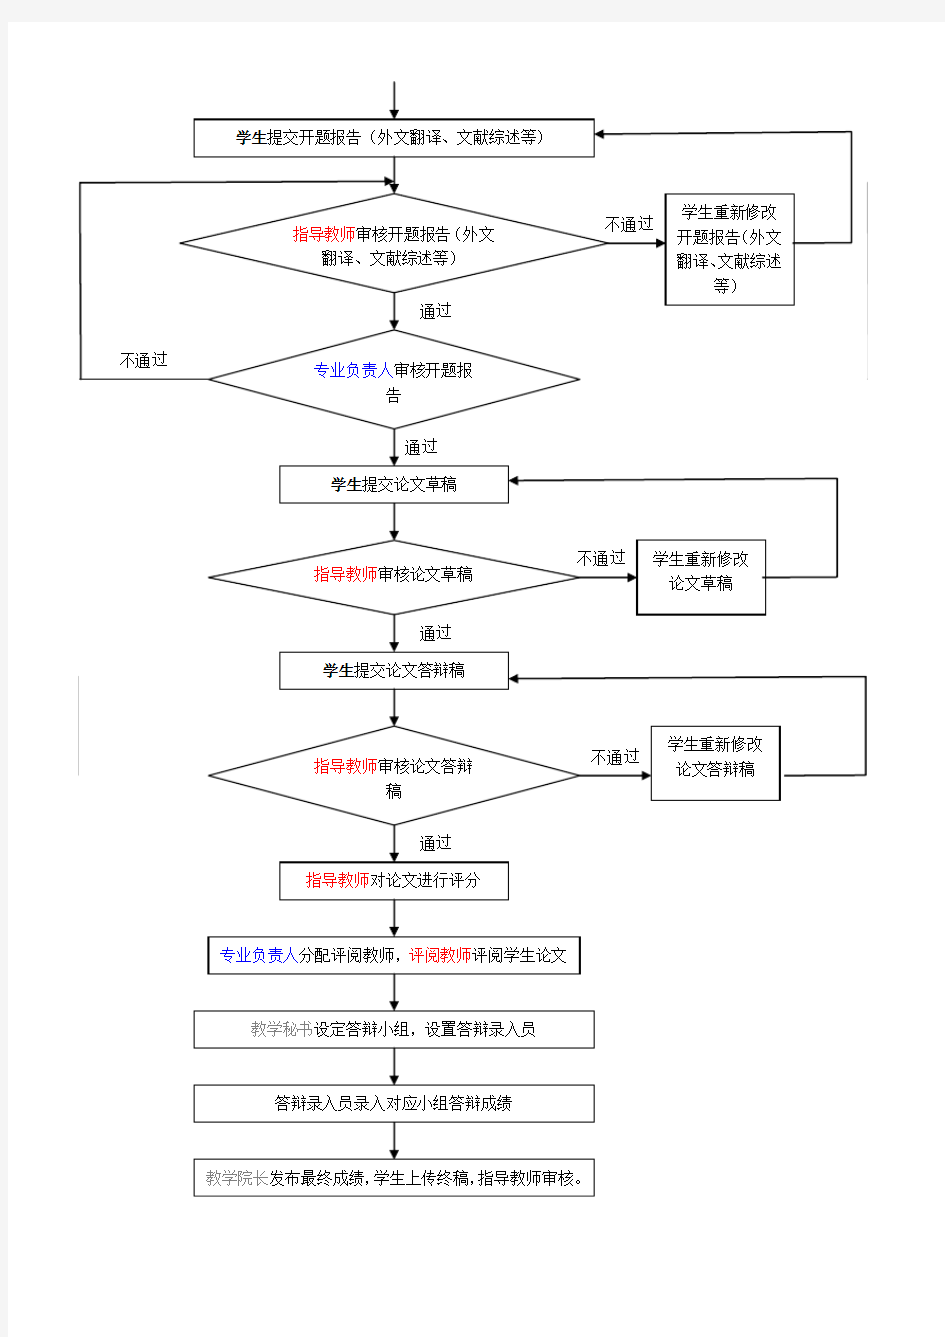 江南大学毕业设计(论文)系统(盲选)流程概述图